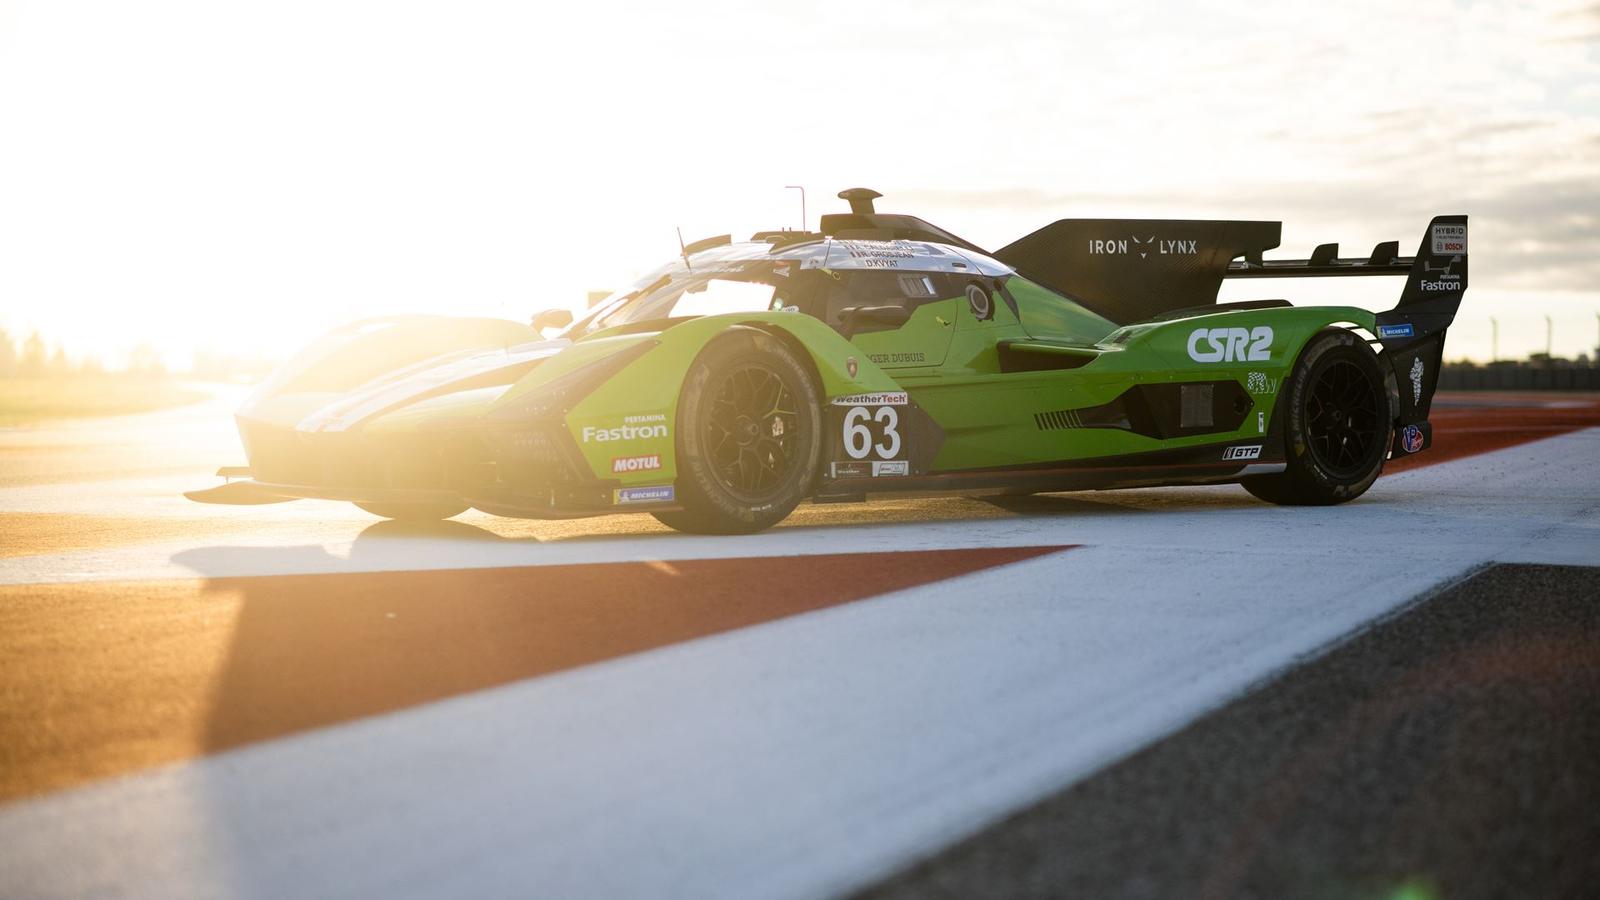 Lamborghini squadra corse csr2 partnership